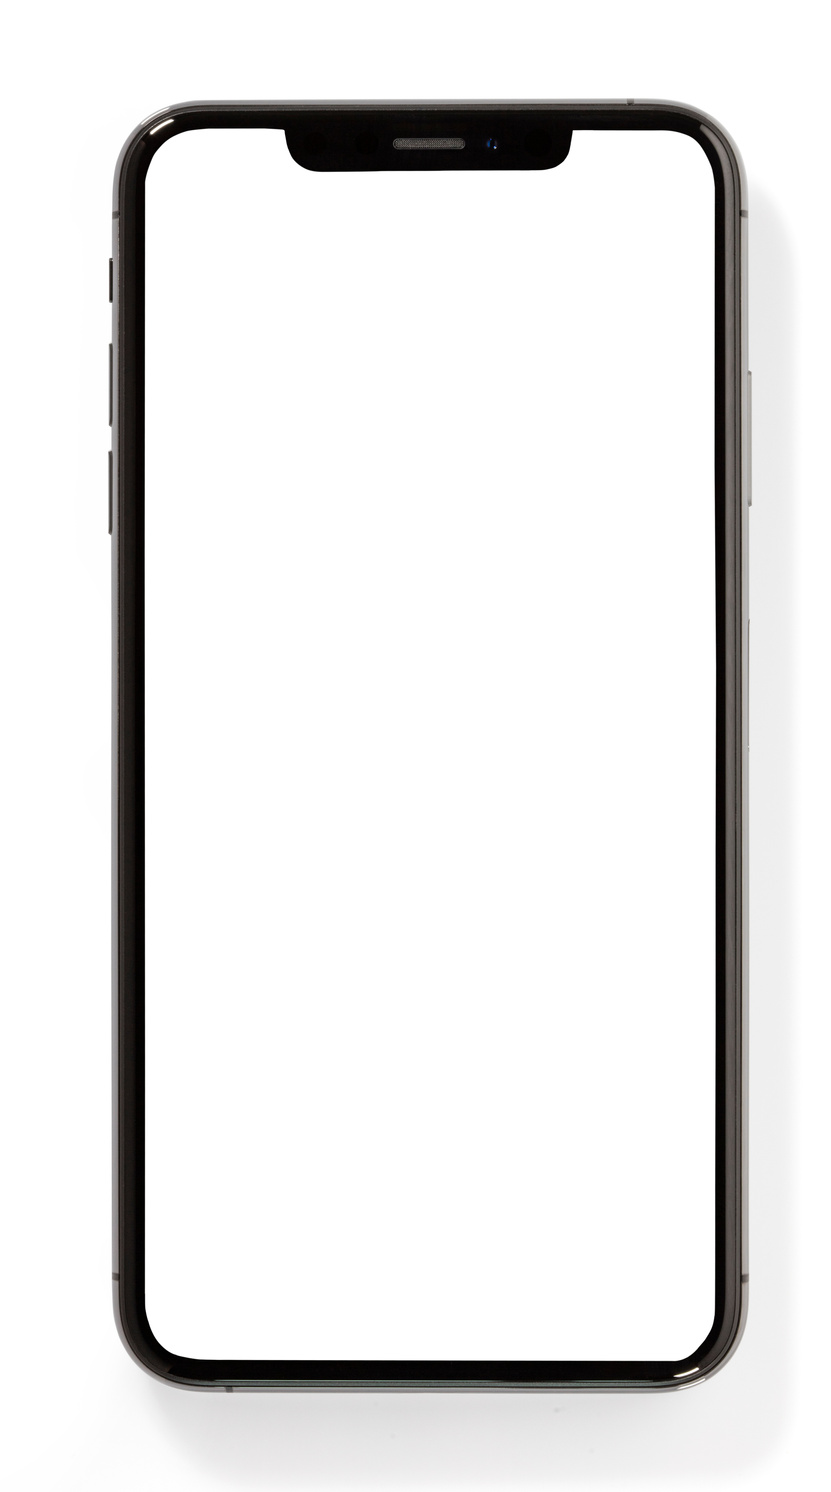 Full screen mobile phone